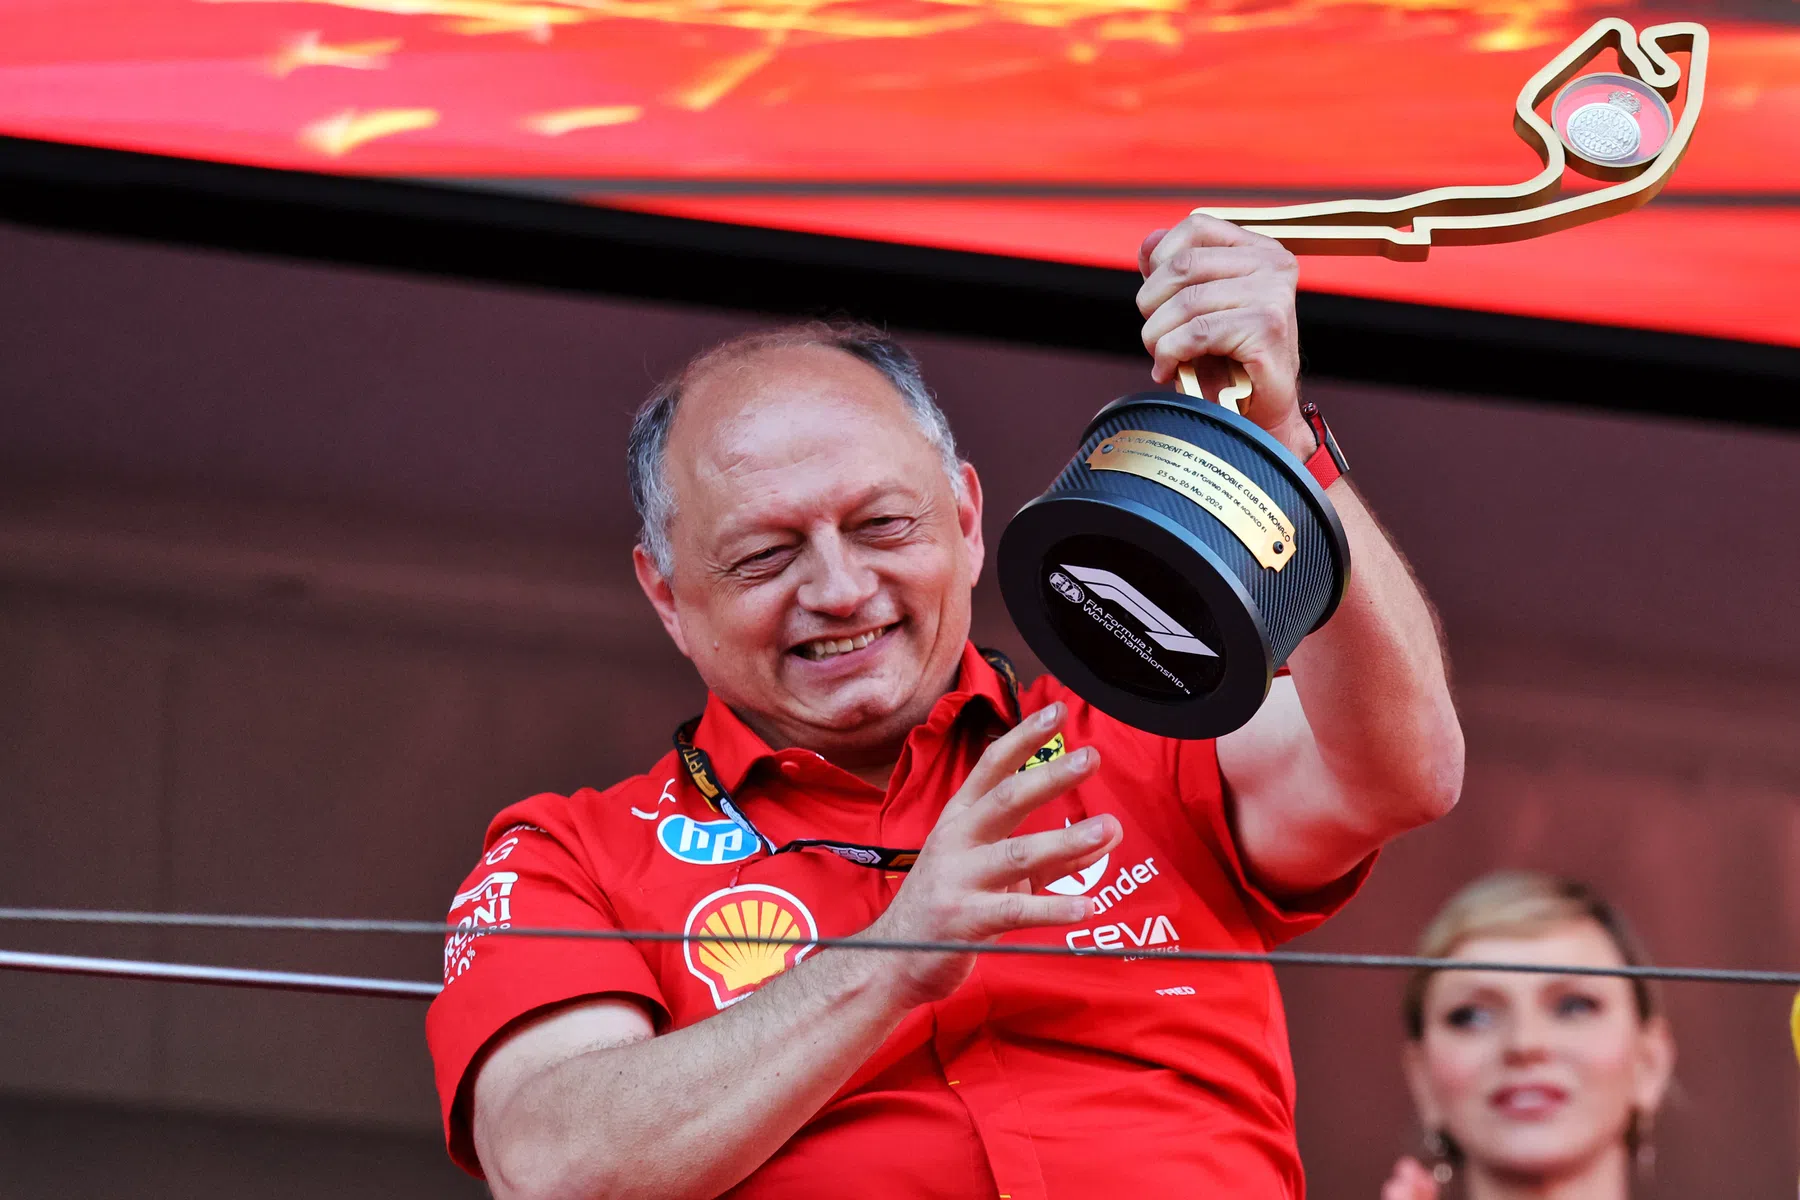 Bernie Collins erzählt, wie Vasseur Ferrari mehr Vertrauen gebracht hat